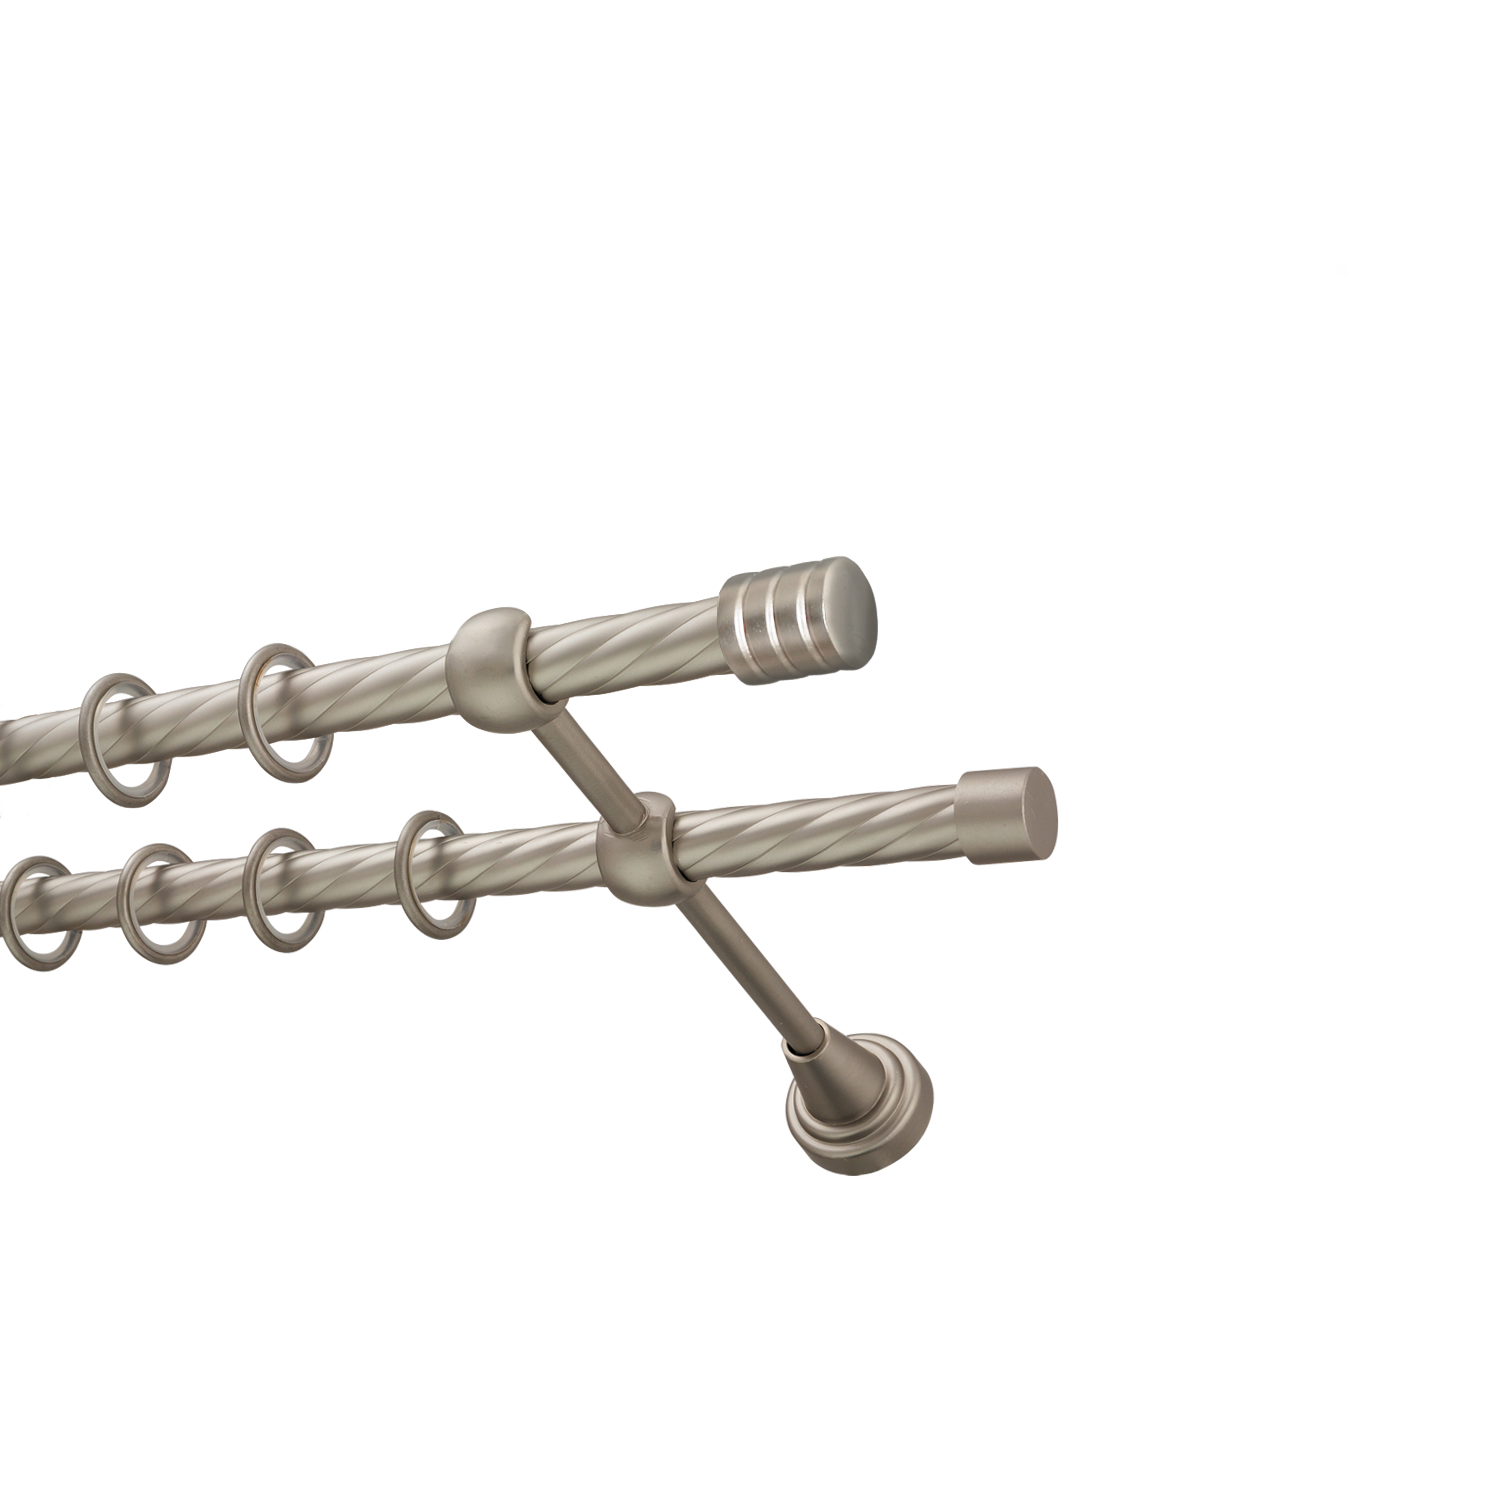 Металлический карниз для штор Подиум, двухрядный 16/16 мм, сталь, витая штанга, длина 300 см - фото Wikidecor.ru